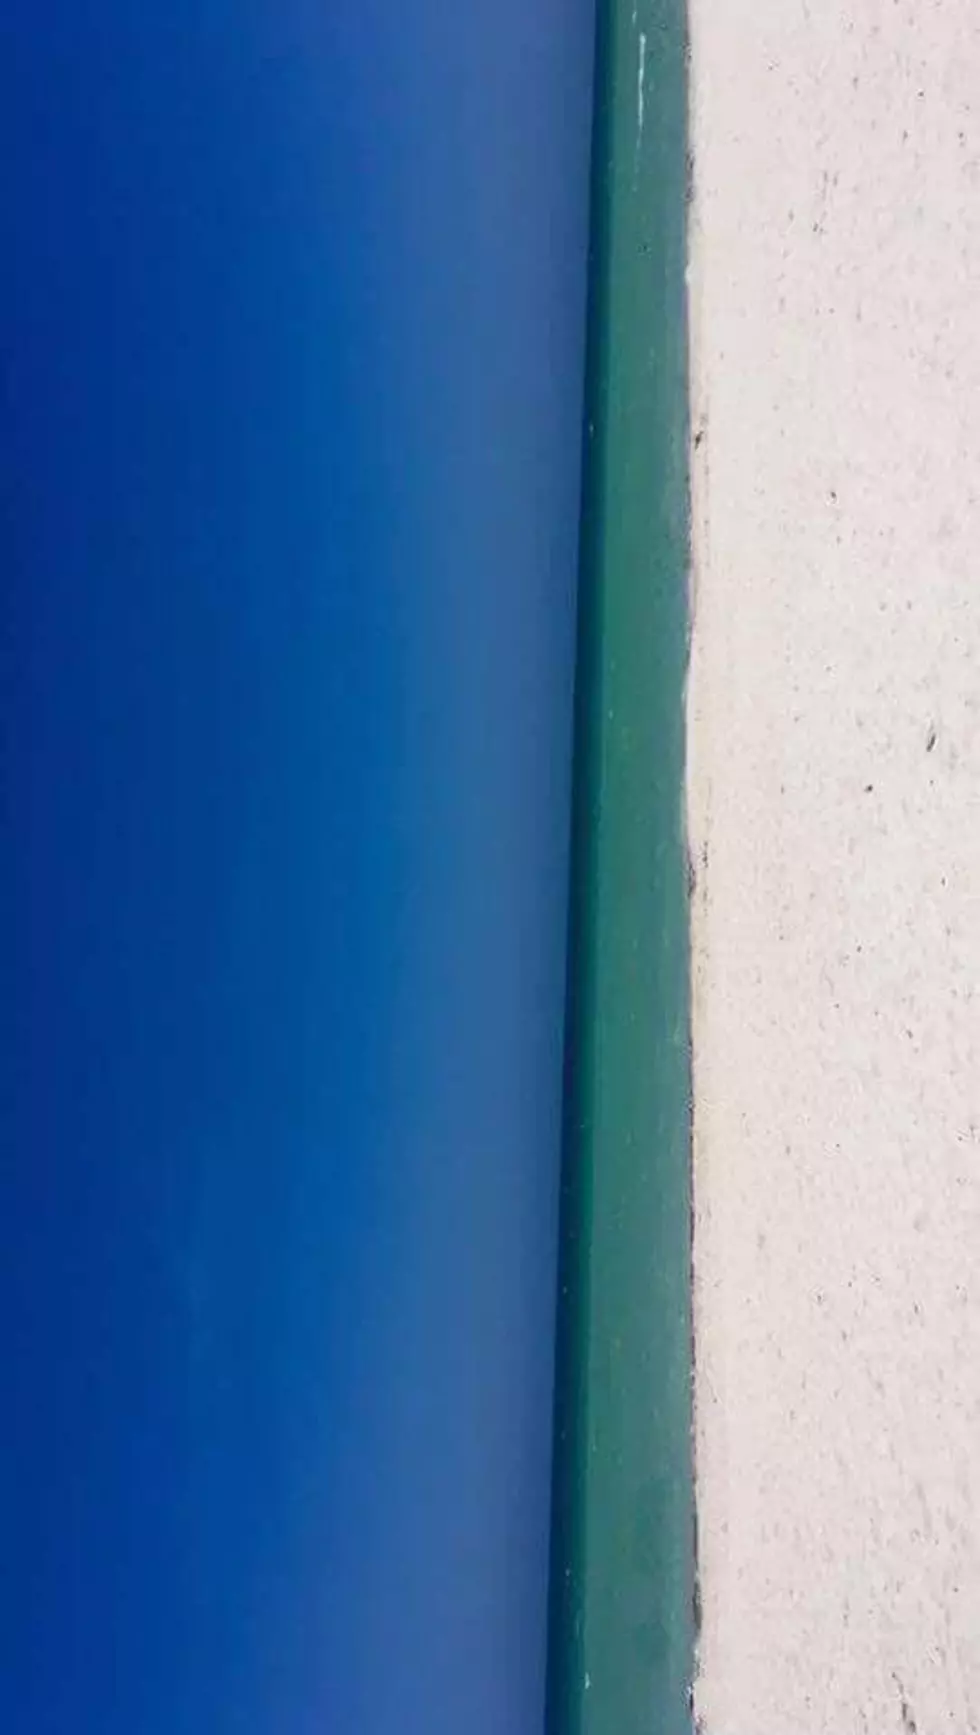 Beach or Door?